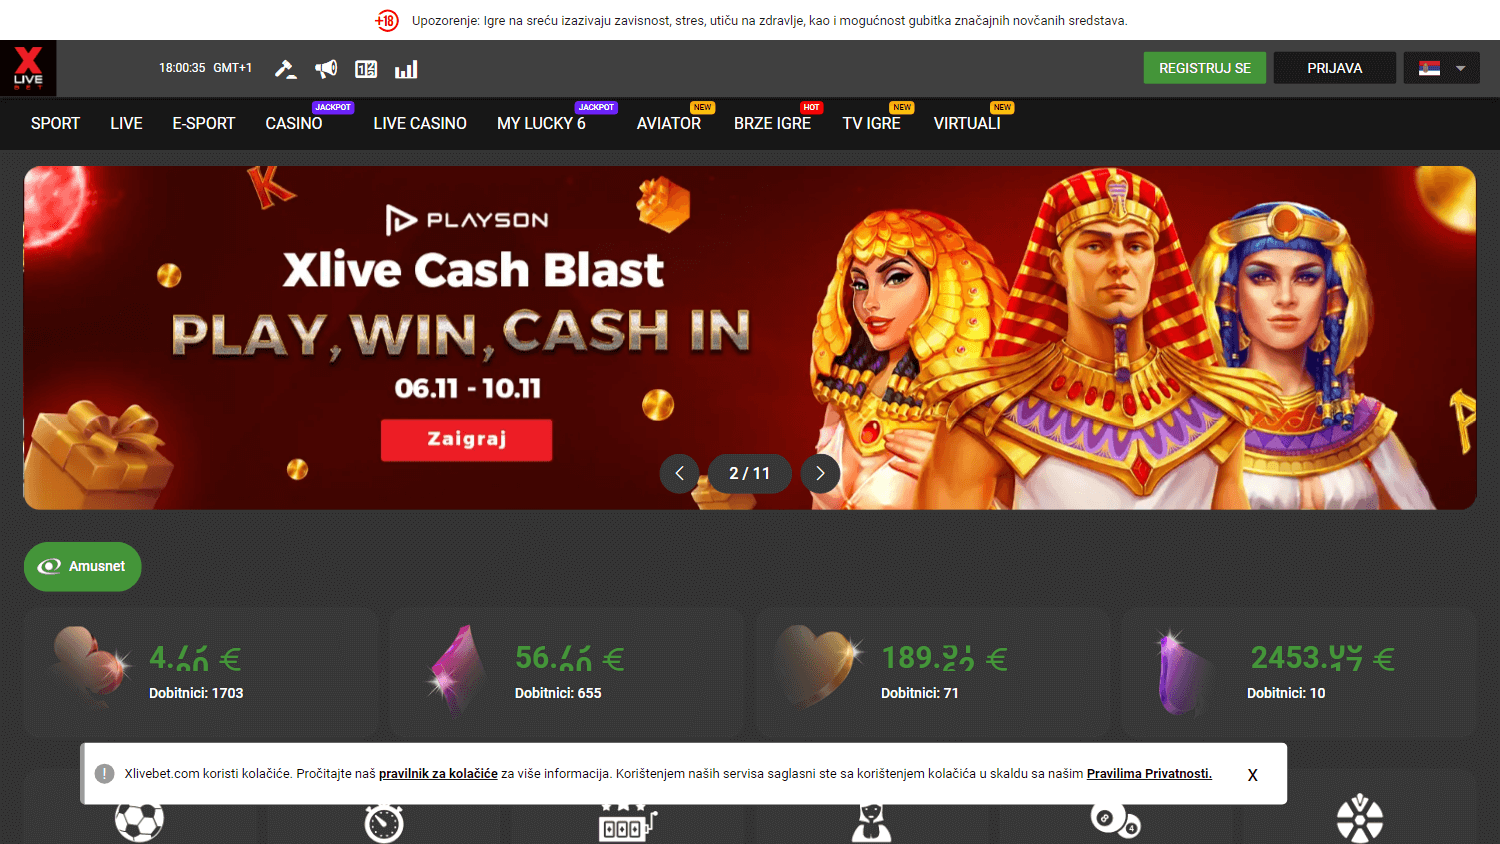 xlivebet_casino_homepage_desktop